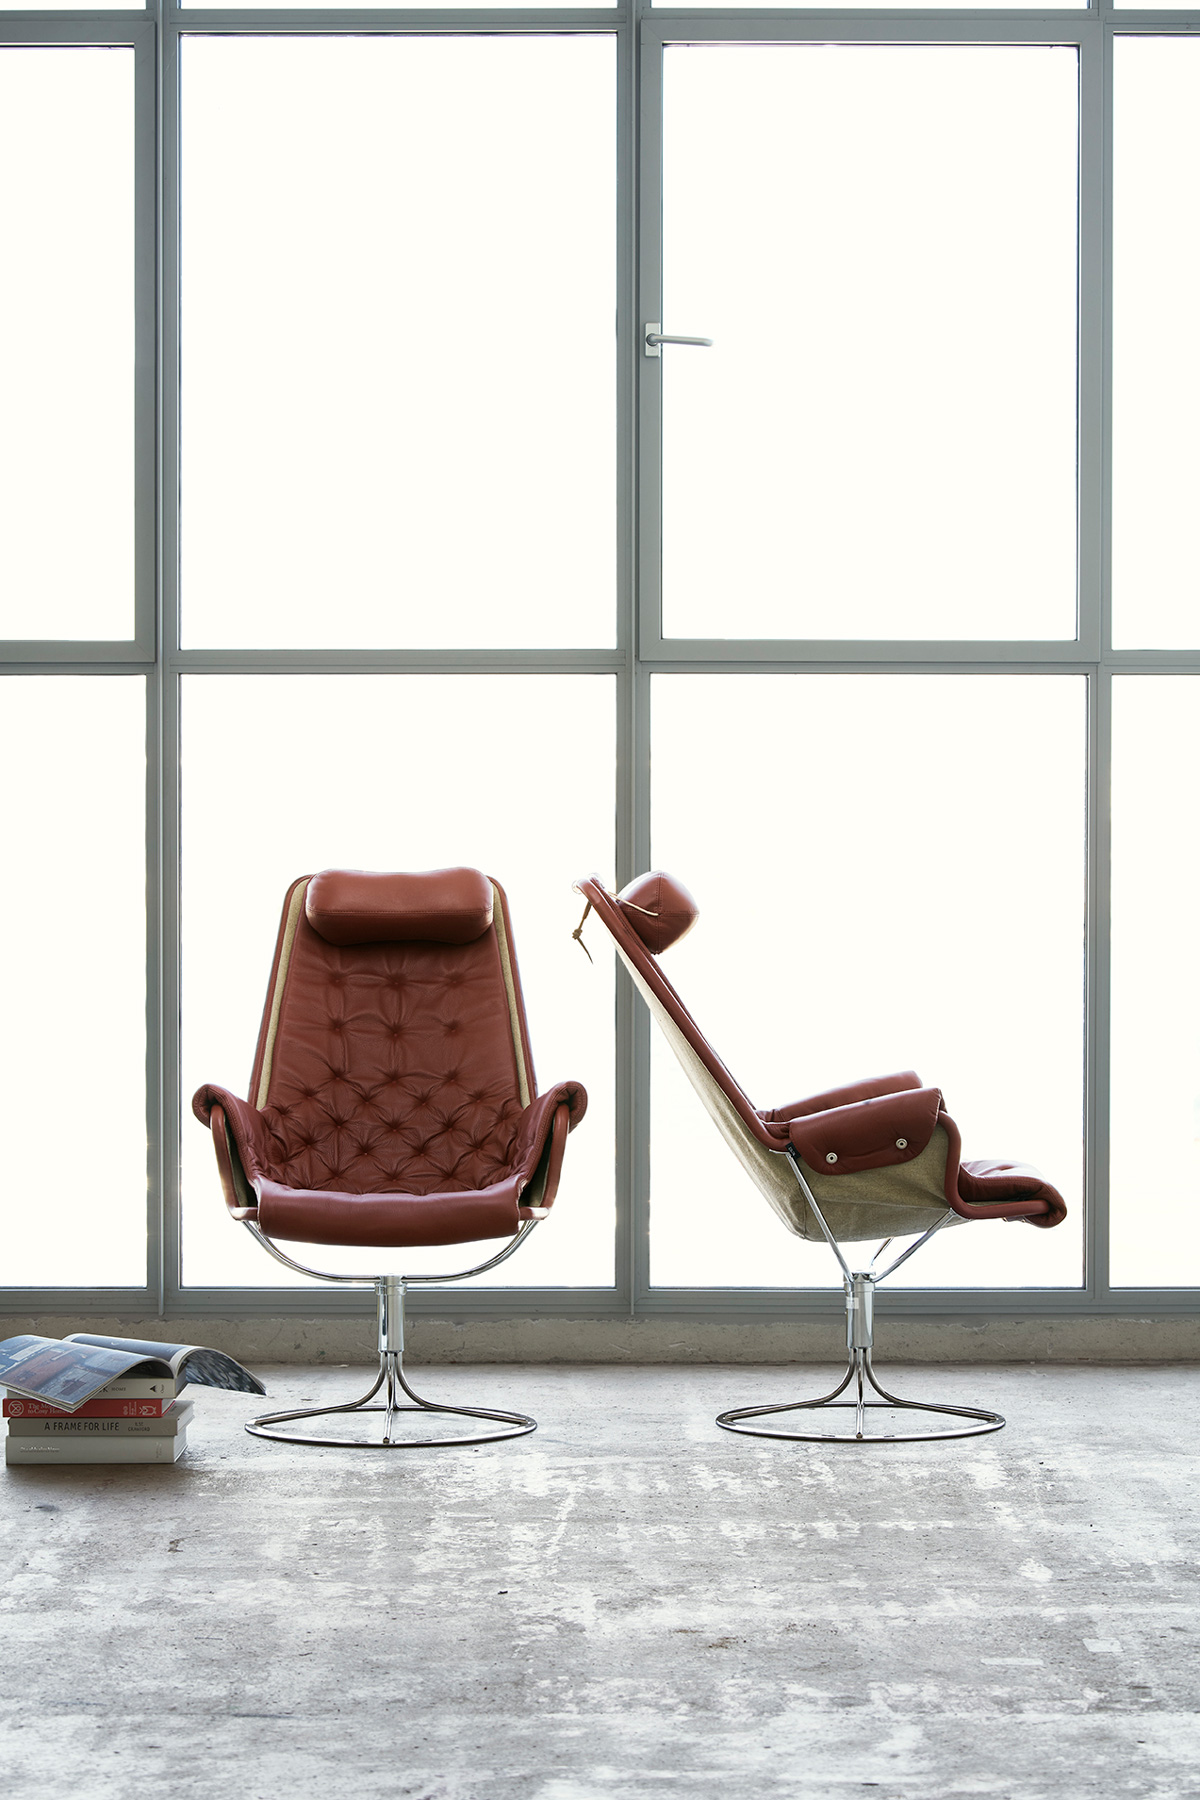 DUX Jetson Chair in Studio 1